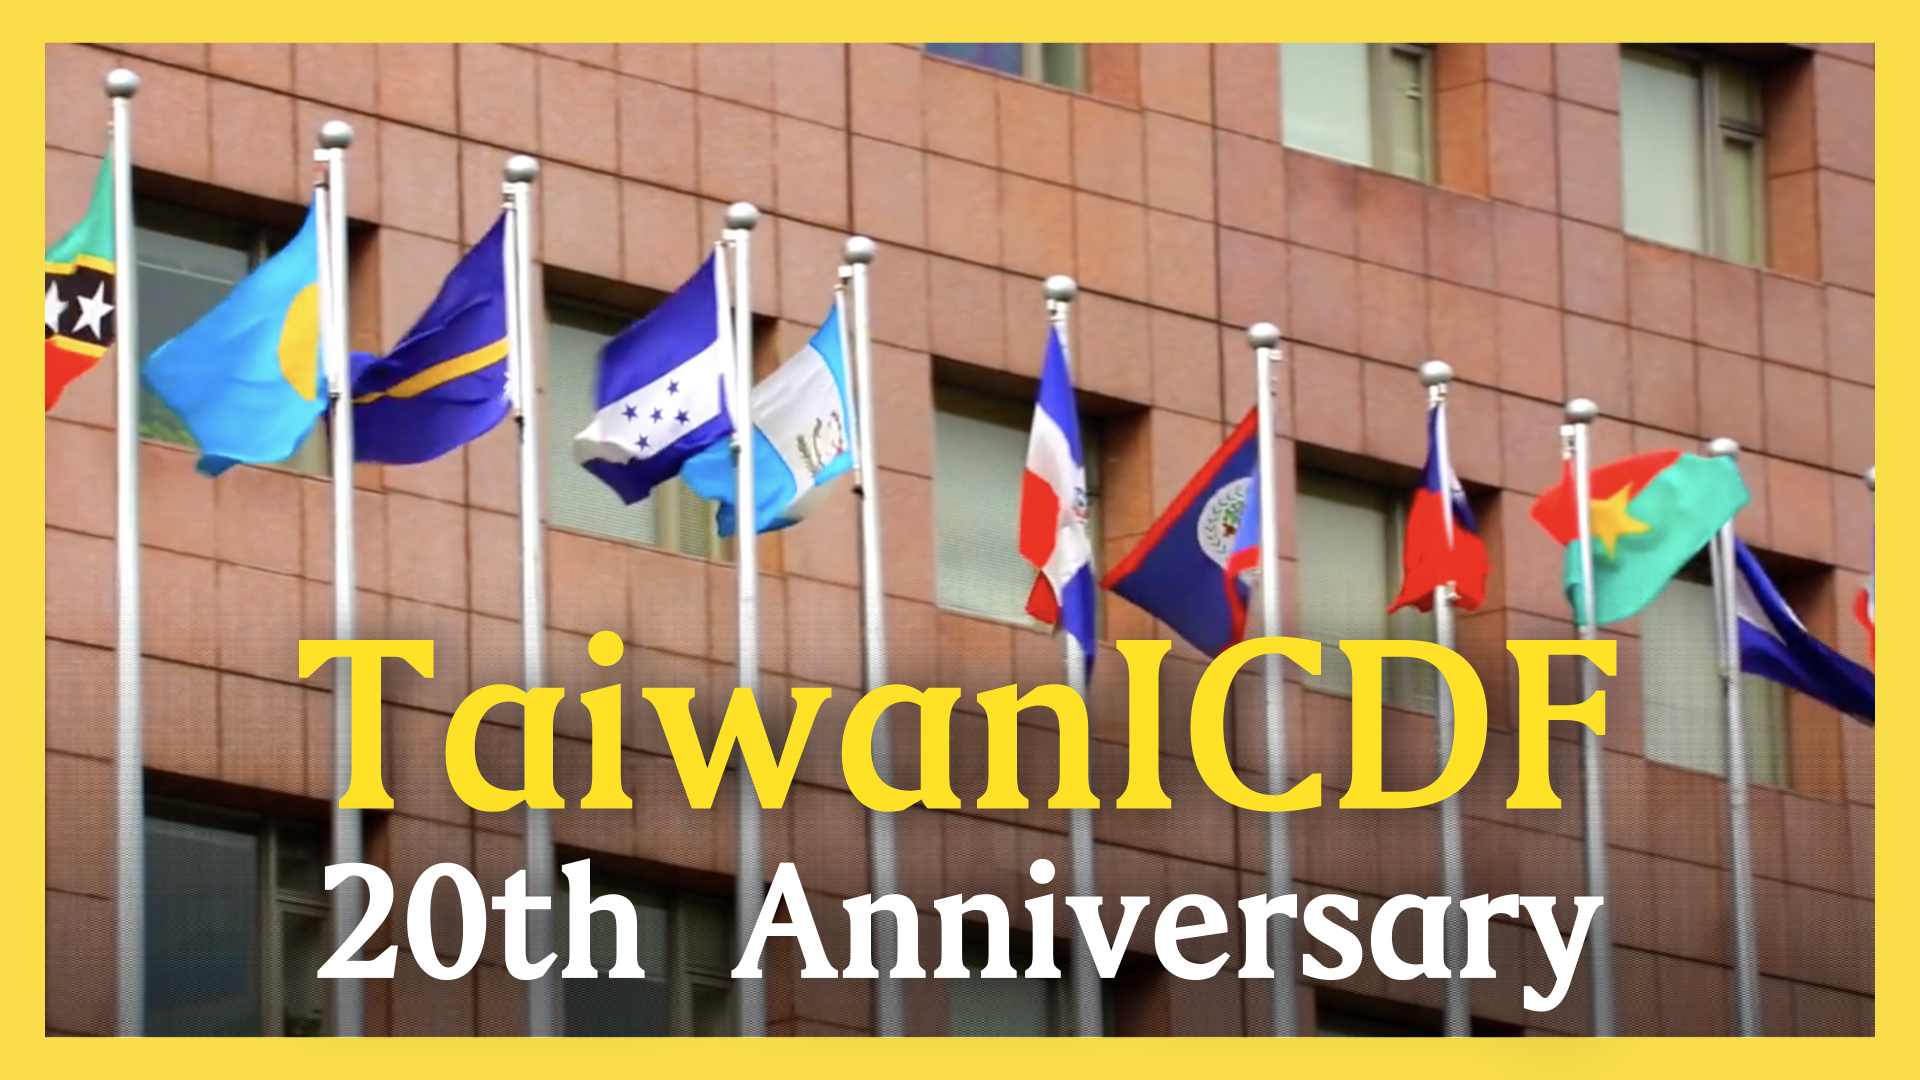 TaiwanICDF 20th Anniversary